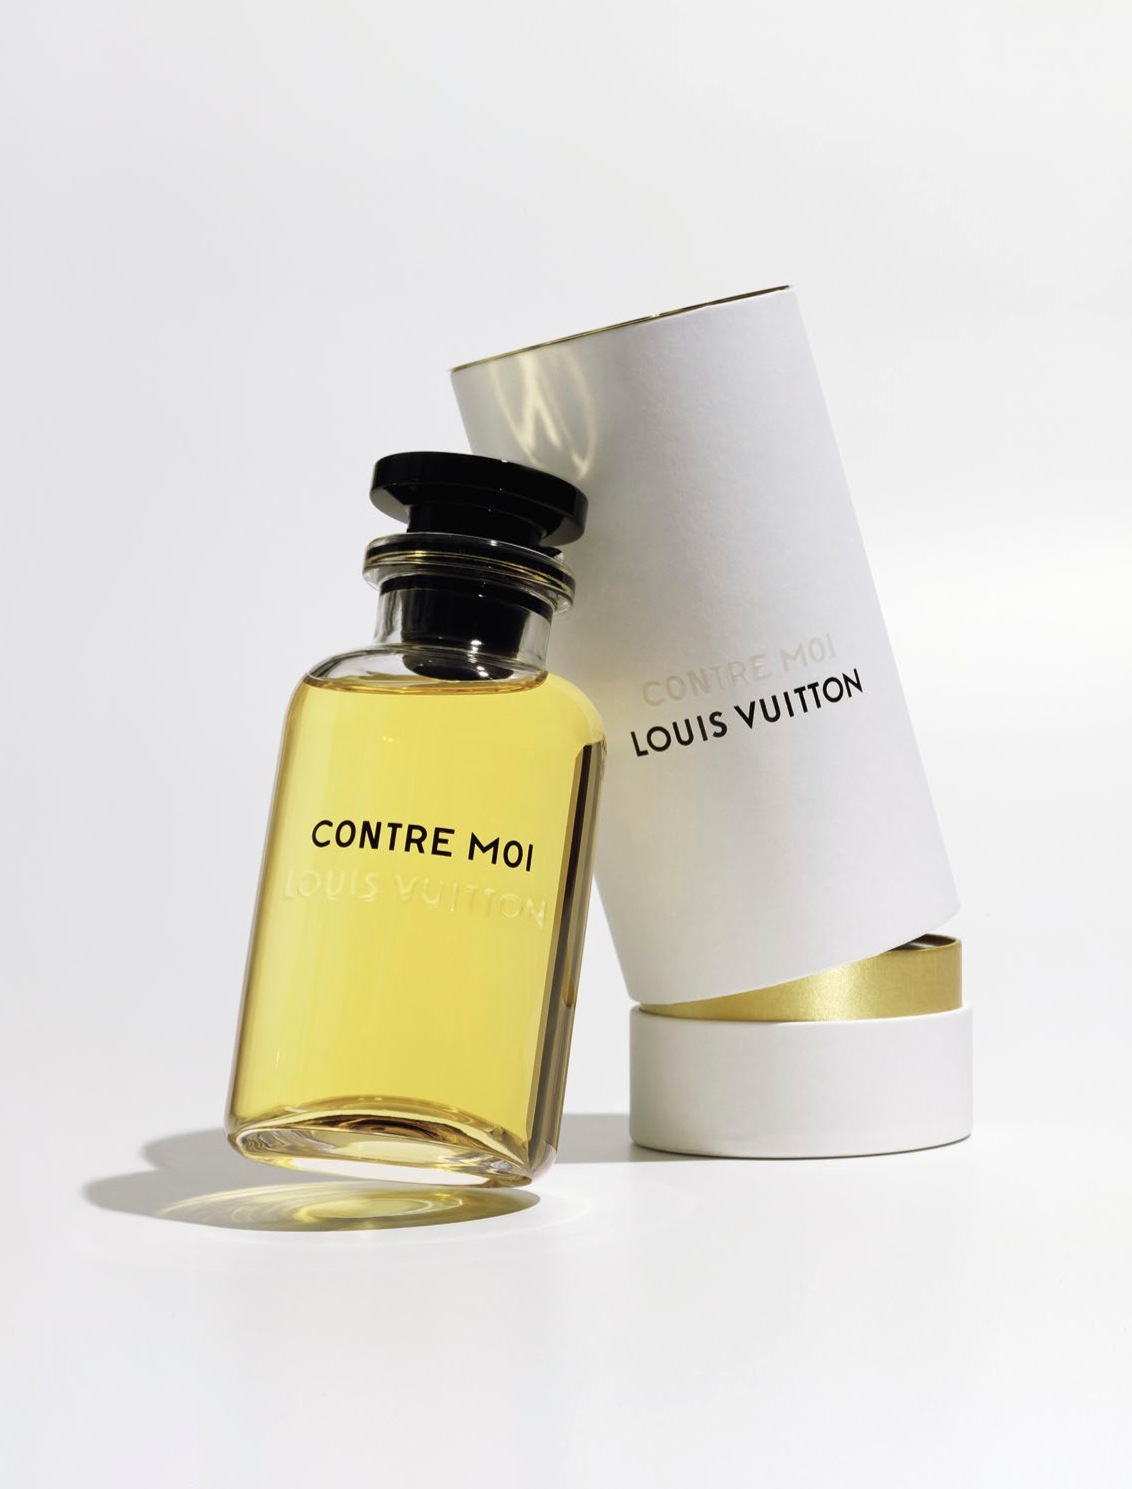 Louis Vuitton re-enter the Fragrance world